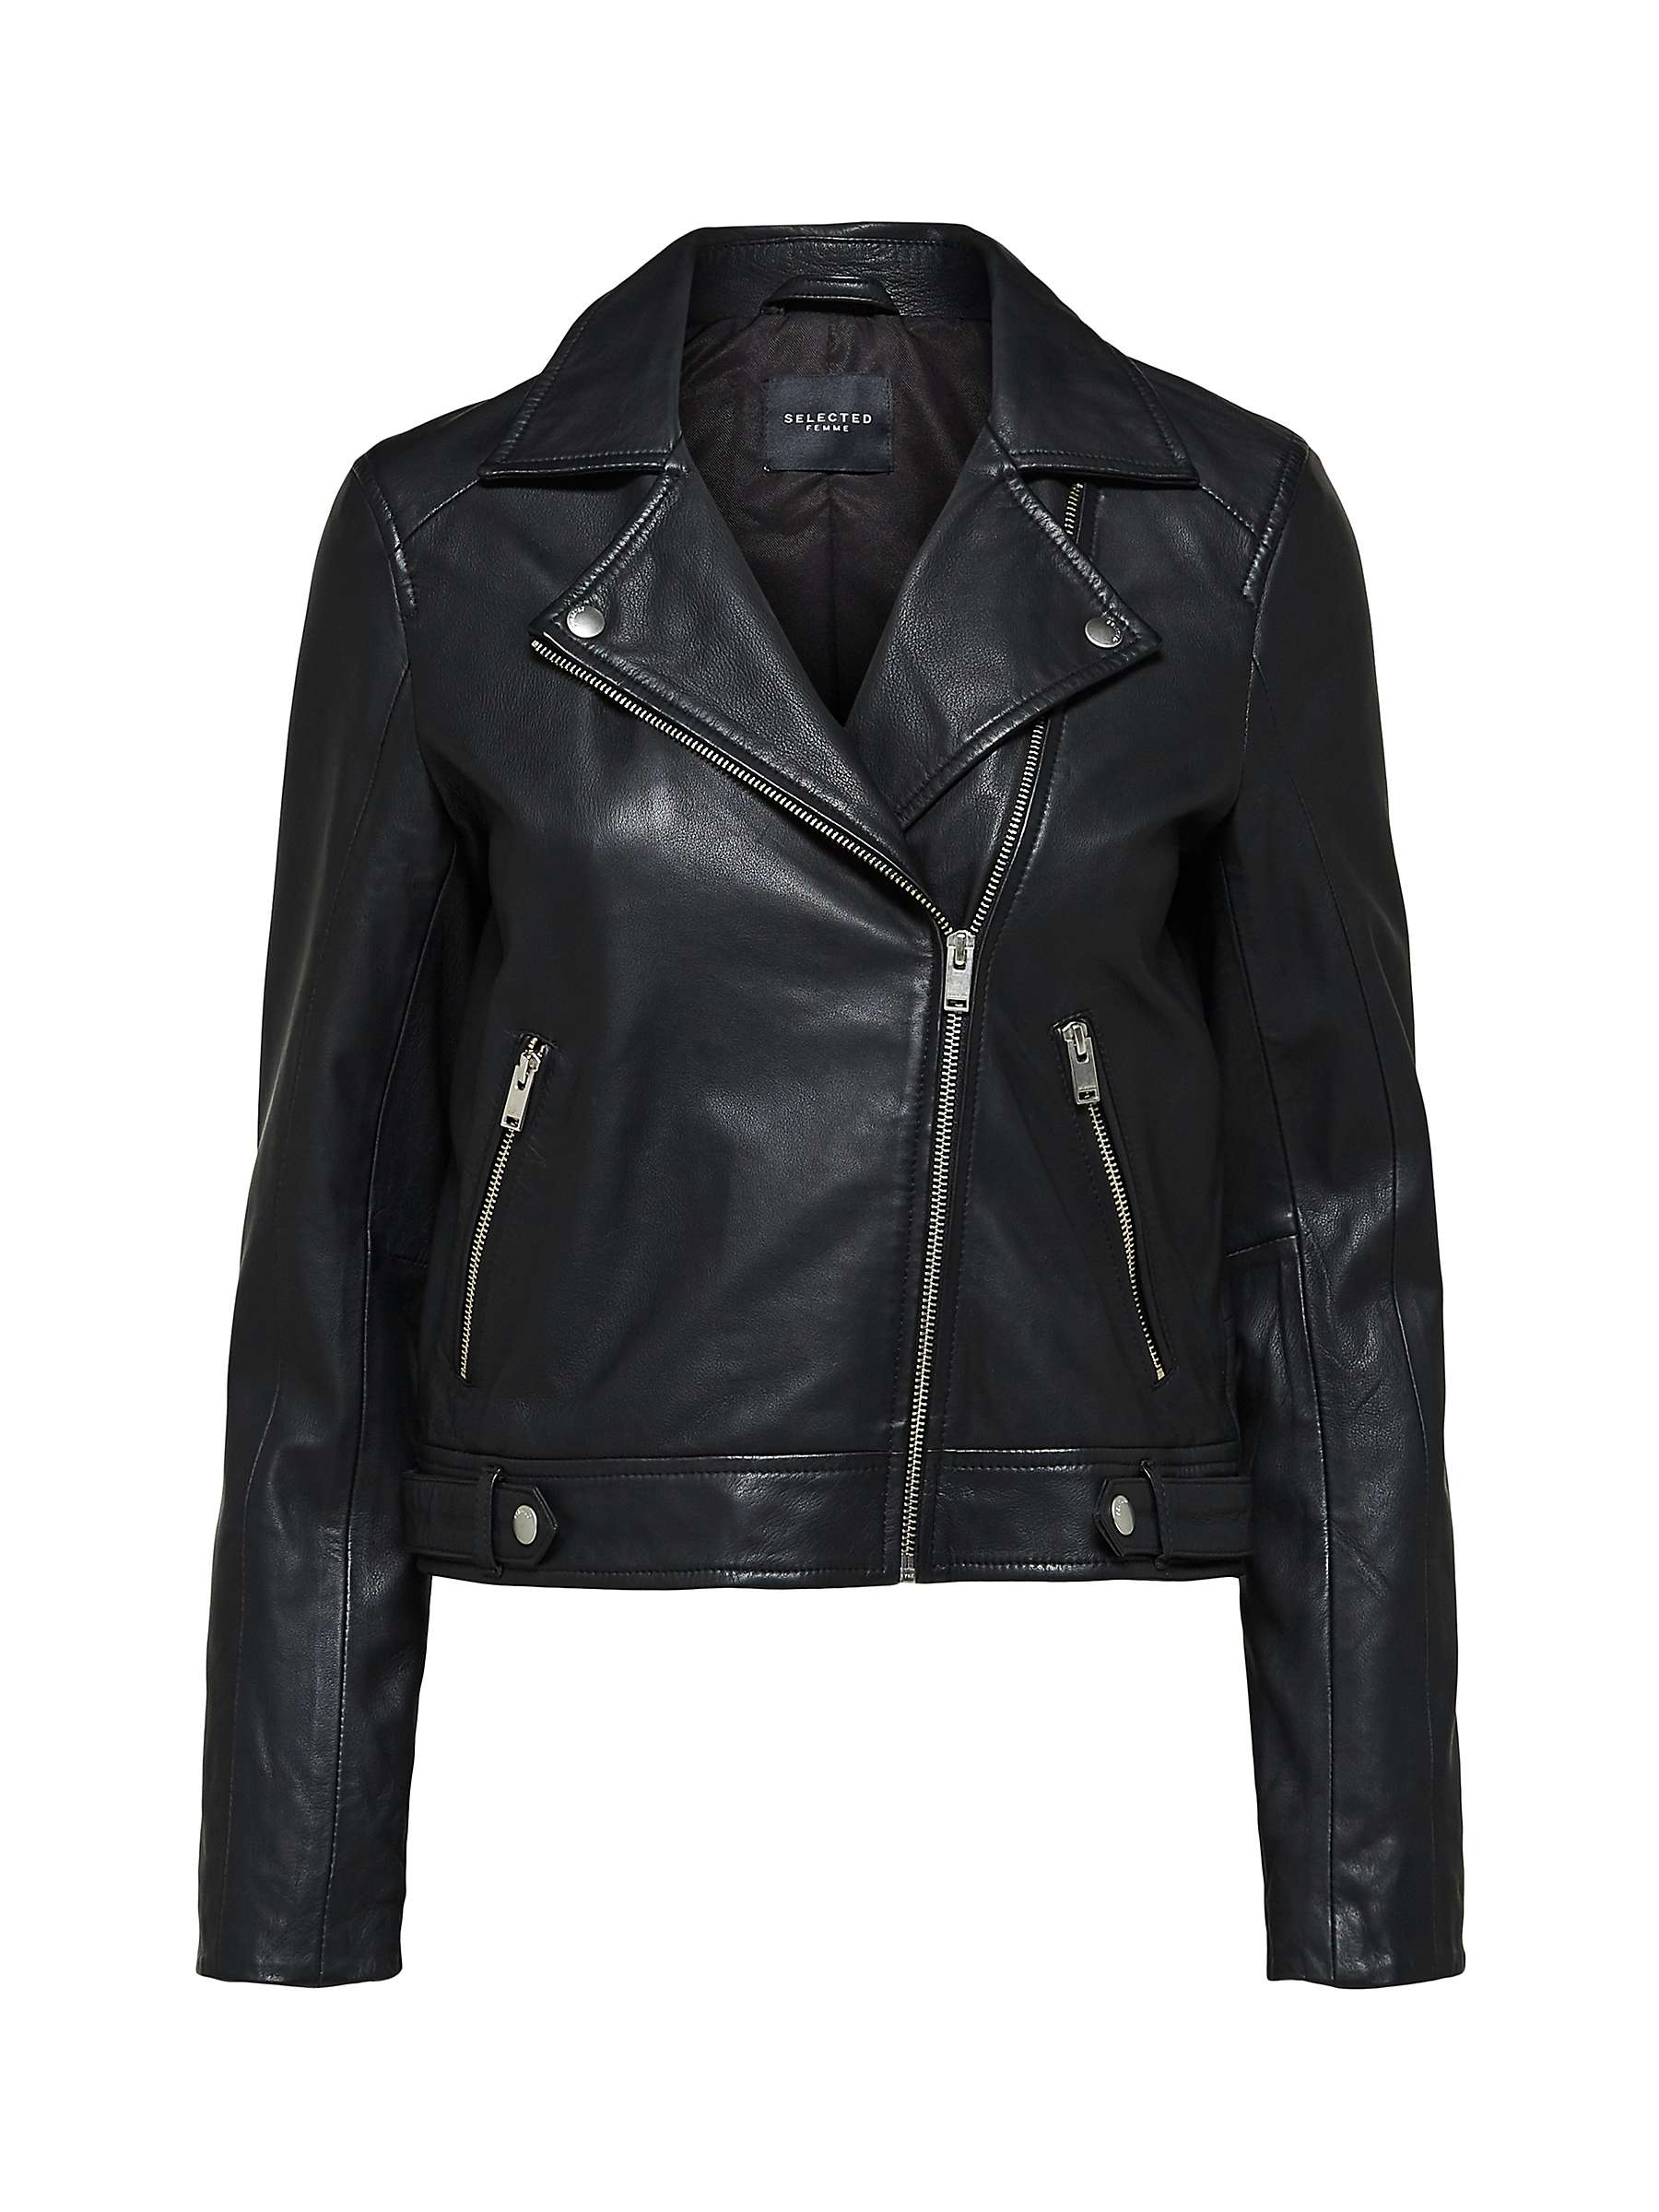 Buy SELECTED FEMME Leather Jacket, Black Online at johnlewis.com